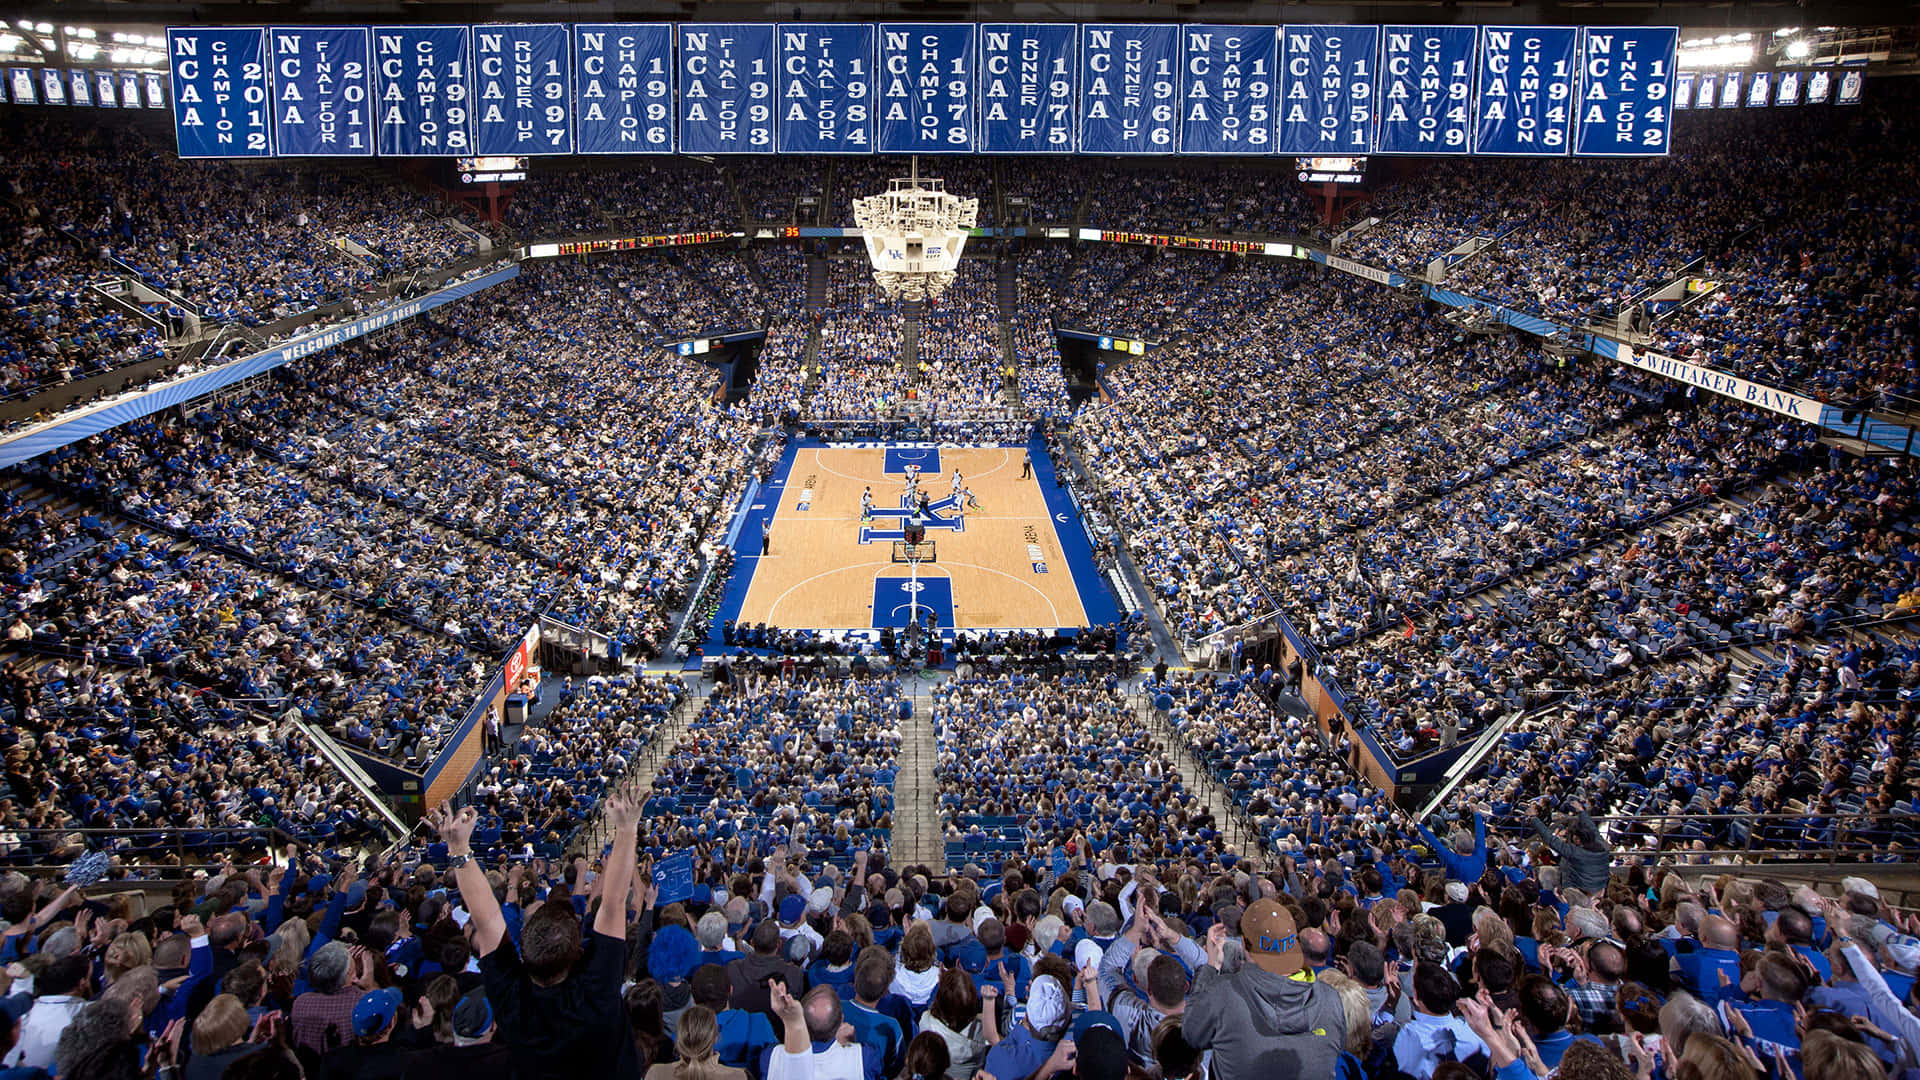 Kentuckywildcats-basketball - Kentucky-wildcats-basketball Wallpaper